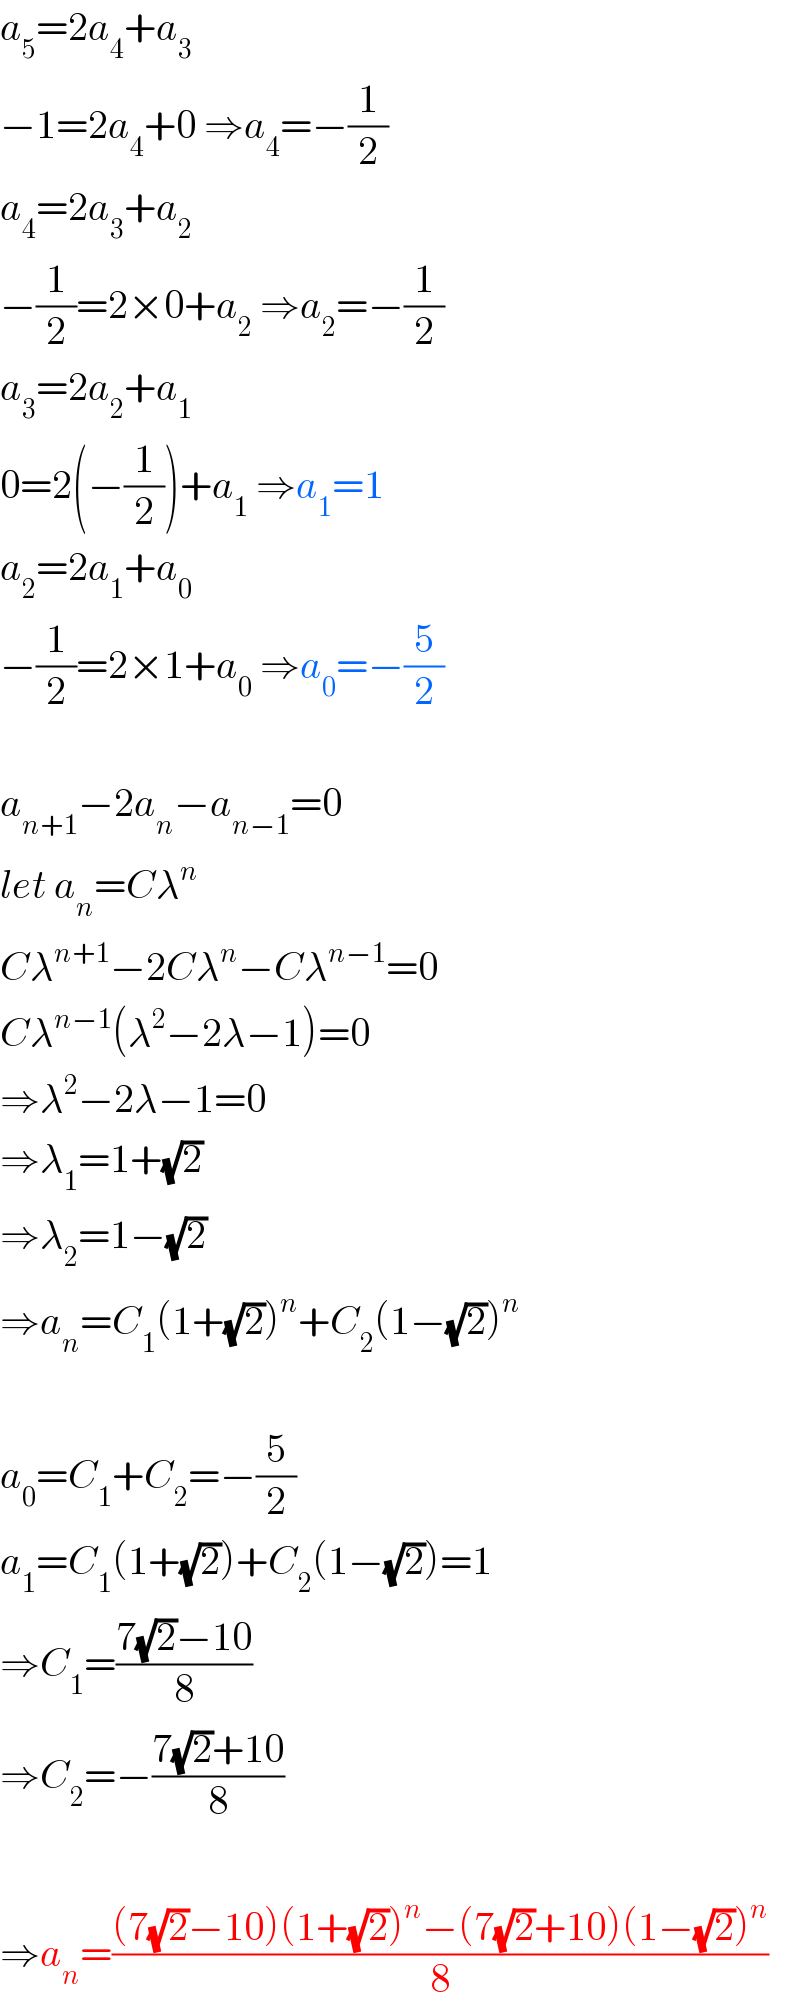 a_5 =2a_4 +a_3   −1=2a_4 +0 ⇒a_4 =−(1/2)  a_4 =2a_3 +a_2   −(1/2)=2×0+a_2  ⇒a_2 =−(1/2)  a_3 =2a_2 +a_1   0=2(−(1/2))+a_1  ⇒a_1 =1  a_2 =2a_1 +a_0   −(1/2)=2×1+a_0  ⇒a_0 =−(5/2)    a_(n+1) −2a_n −a_(n−1) =0  let a_n =Cλ^n   Cλ^(n+1) −2Cλ^n −Cλ^(n−1) =0  Cλ^(n−1) (λ^2 −2λ−1)=0  ⇒λ^2 −2λ−1=0  ⇒λ_1 =1+(√2)  ⇒λ_2 =1−(√2)  ⇒a_n =C_1 (1+(√2))^n +C_2 (1−(√2))^n     a_0 =C_1 +C_2 =−(5/2)  a_1 =C_1 (1+(√2))+C_2 (1−(√2))=1  ⇒C_1 =((7(√2)−10)/8)  ⇒C_2 =−((7(√2)+10)/8)    ⇒a_n =(((7(√2)−10)(1+(√2))^n −(7(√2)+10)(1−(√2))^n )/8)  